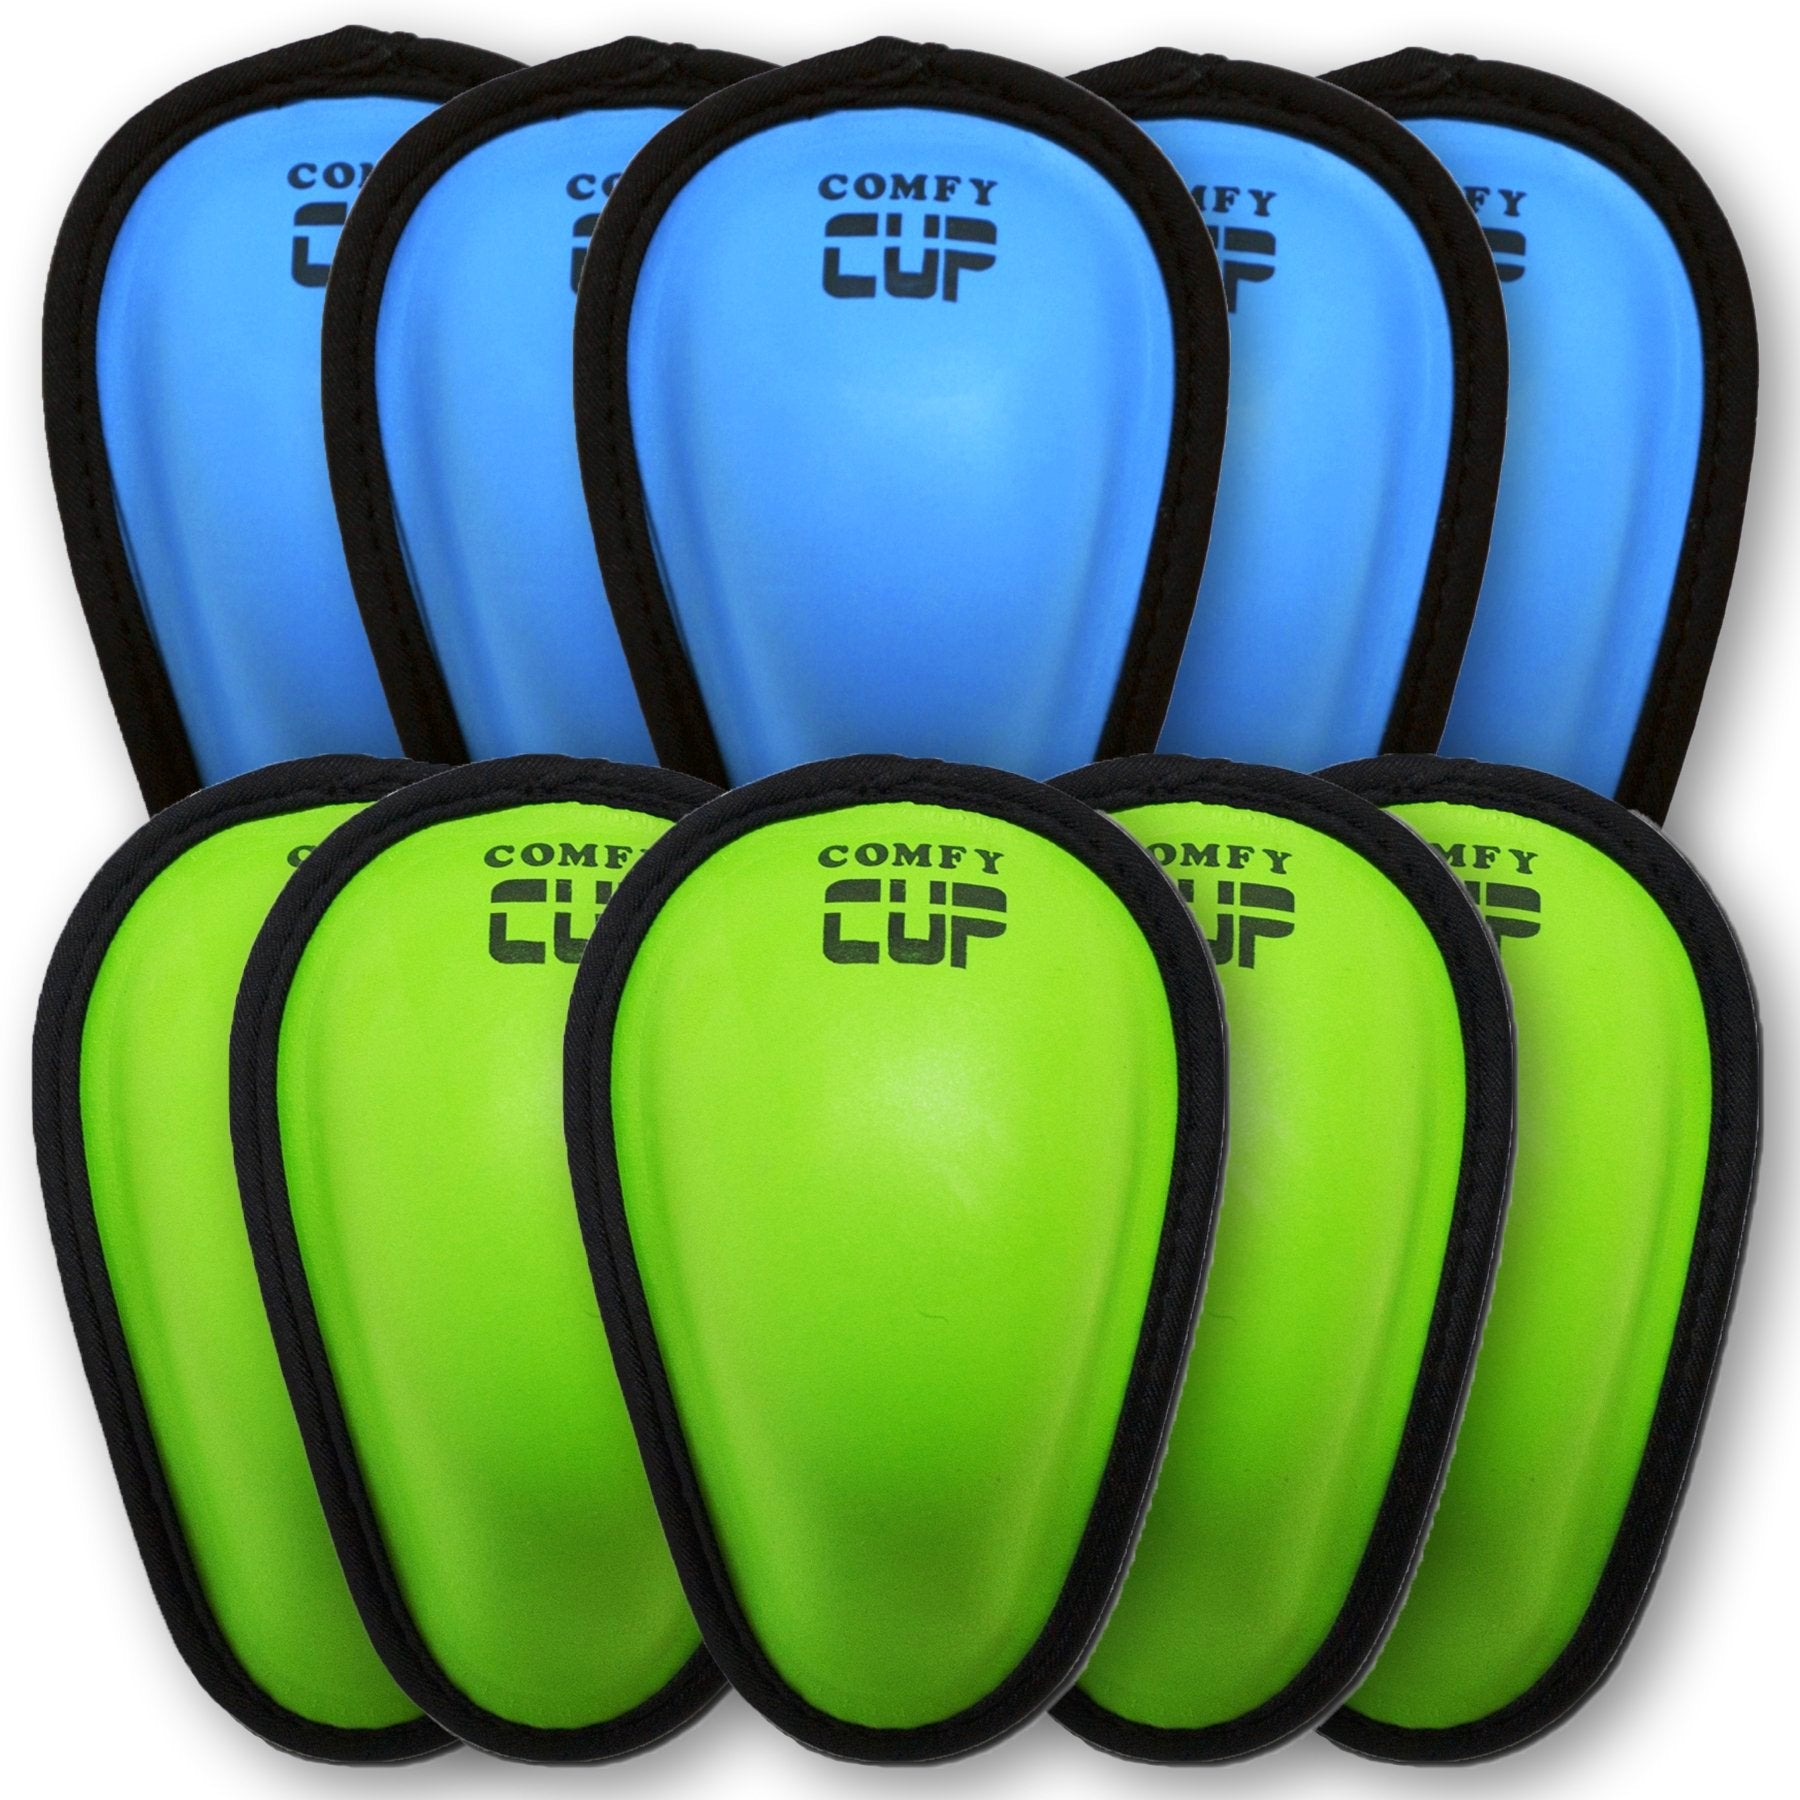 Ten Comfy Cups (5 Neon Blue + 5 Neon Green)